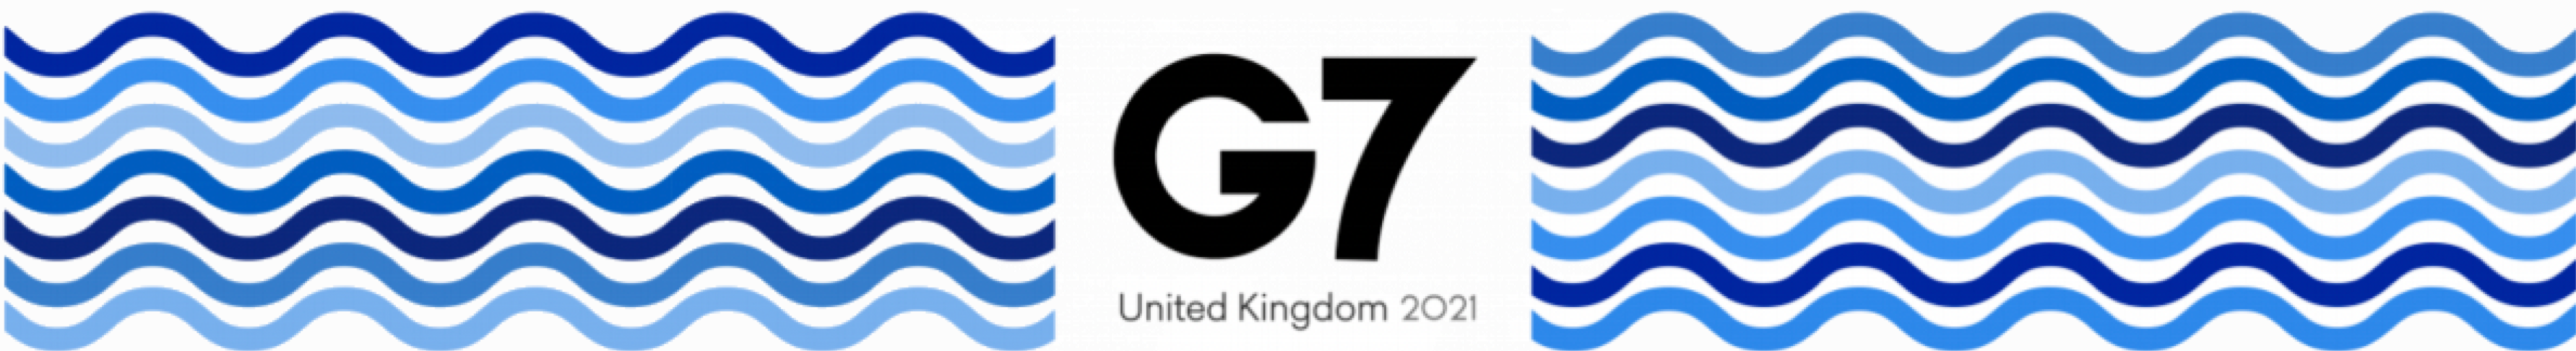 g7-HEADER.png#asset:11252